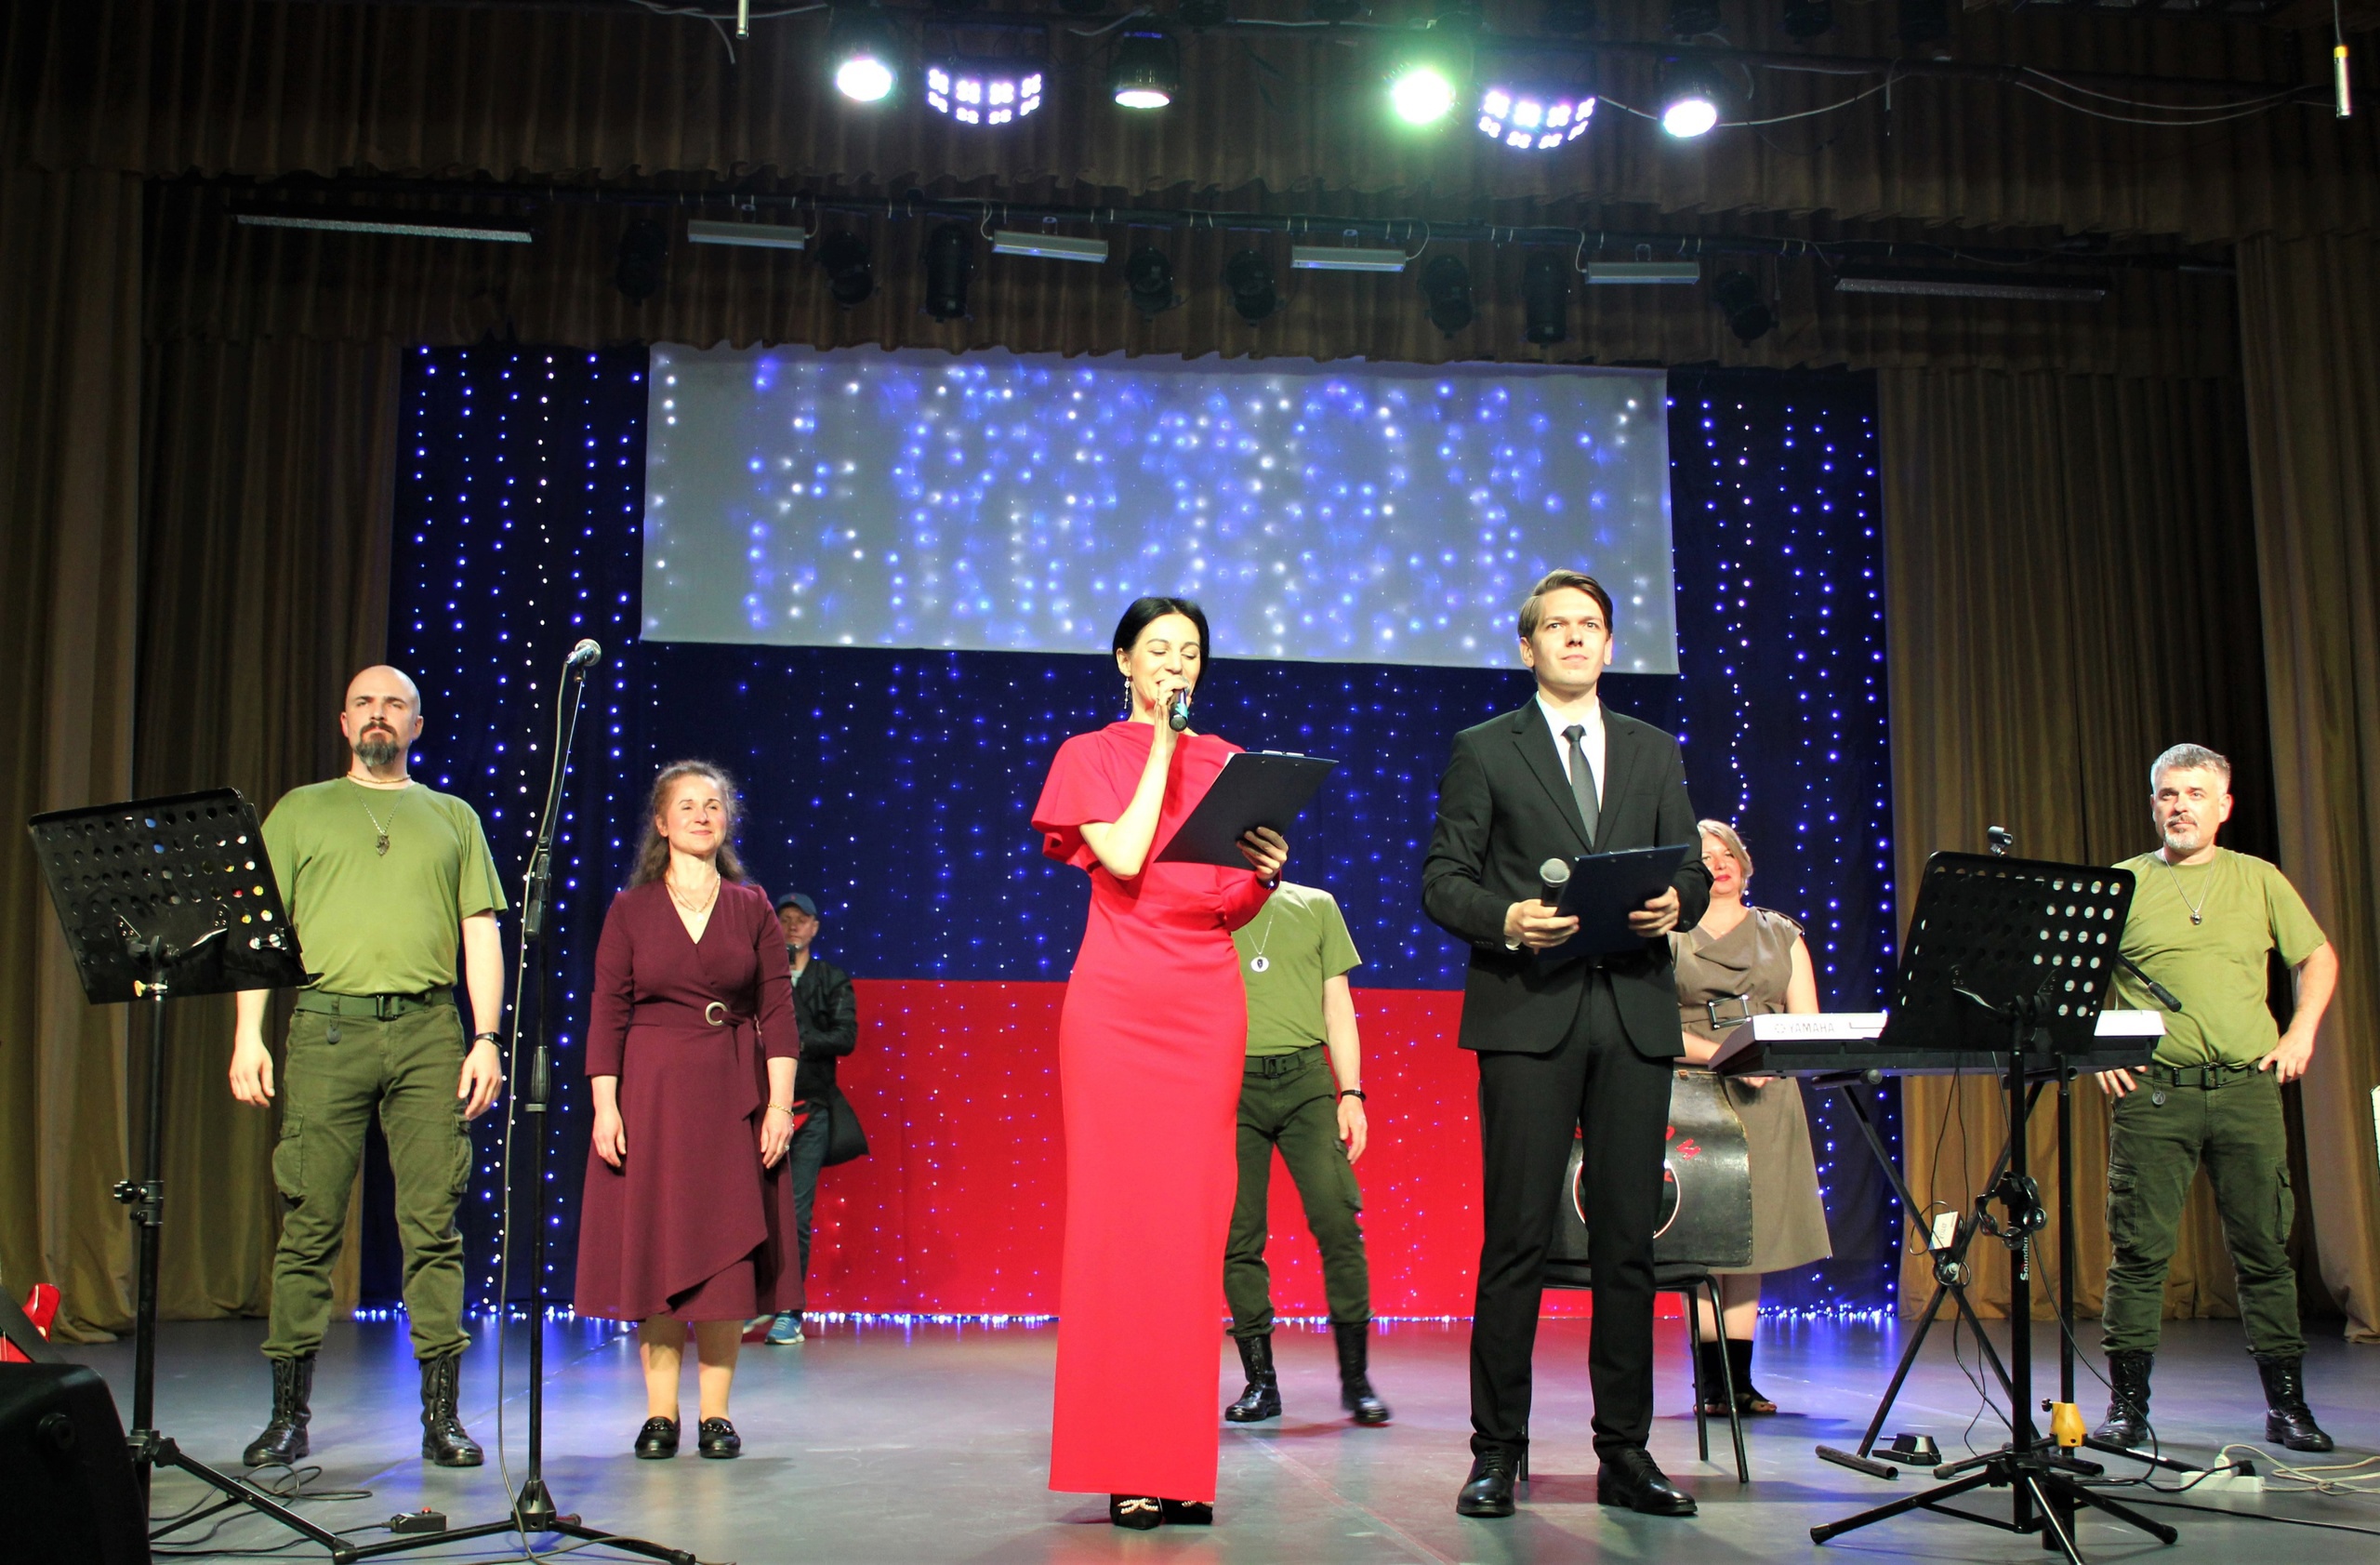 В Копейске прошел благотворительный концерт Юлии Ваченковой и группы "ZOV" из Бердянска